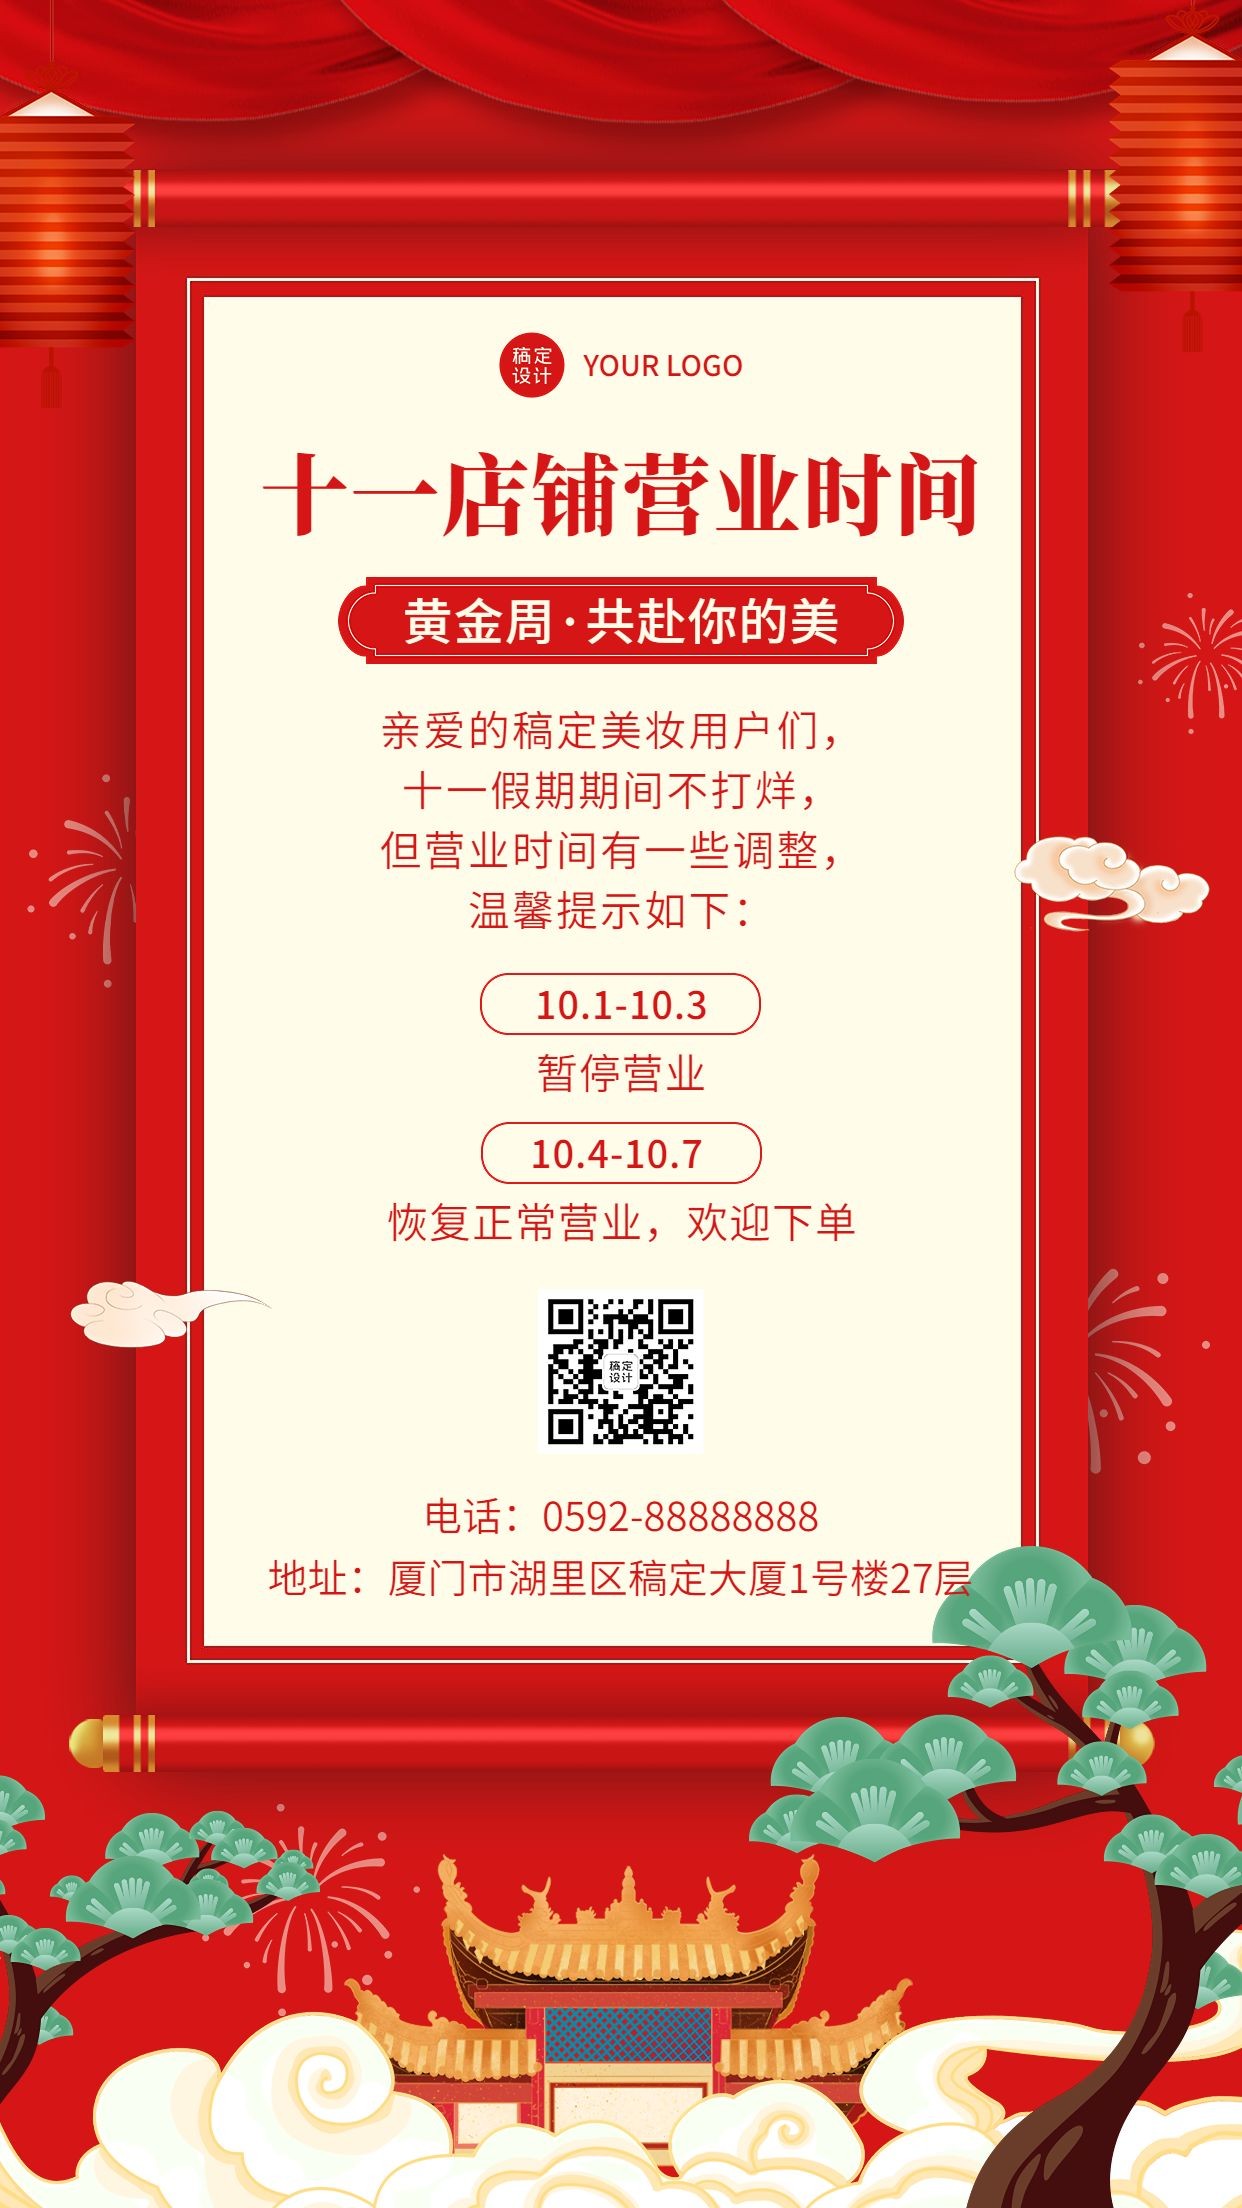 微商店铺十一国庆放假营业通知公告中国风手机海报